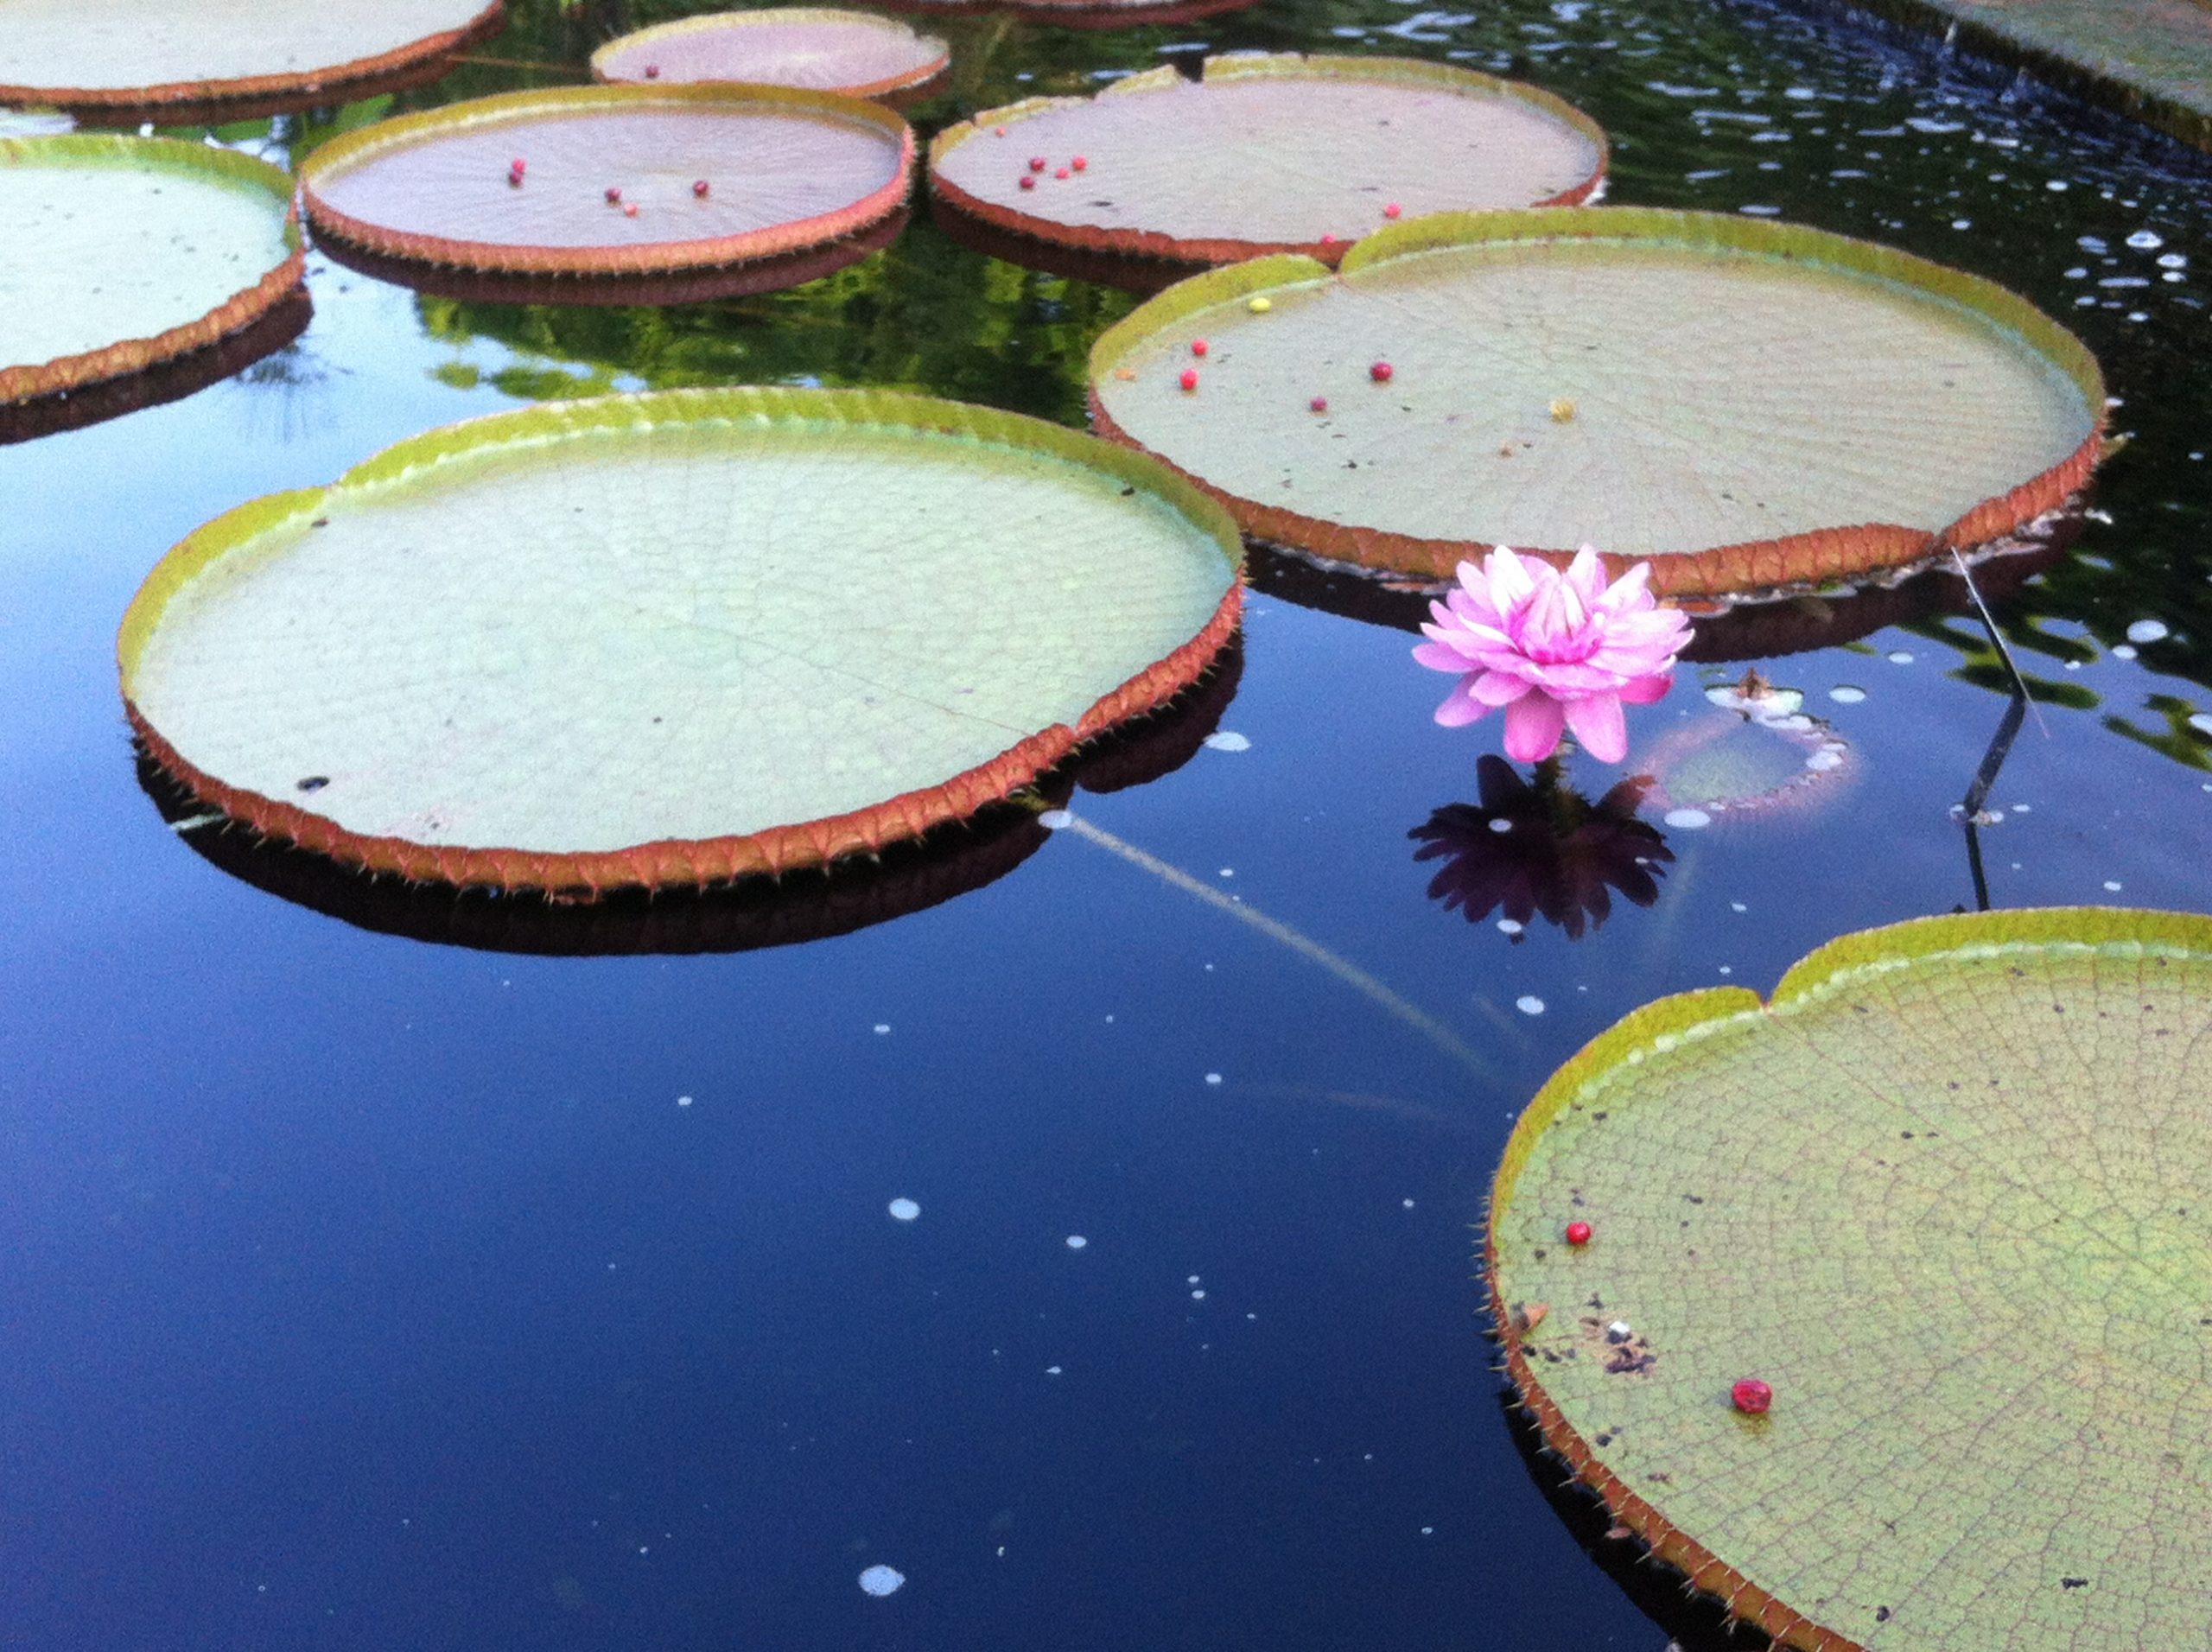 Chicago Botanic Garden Lily pond